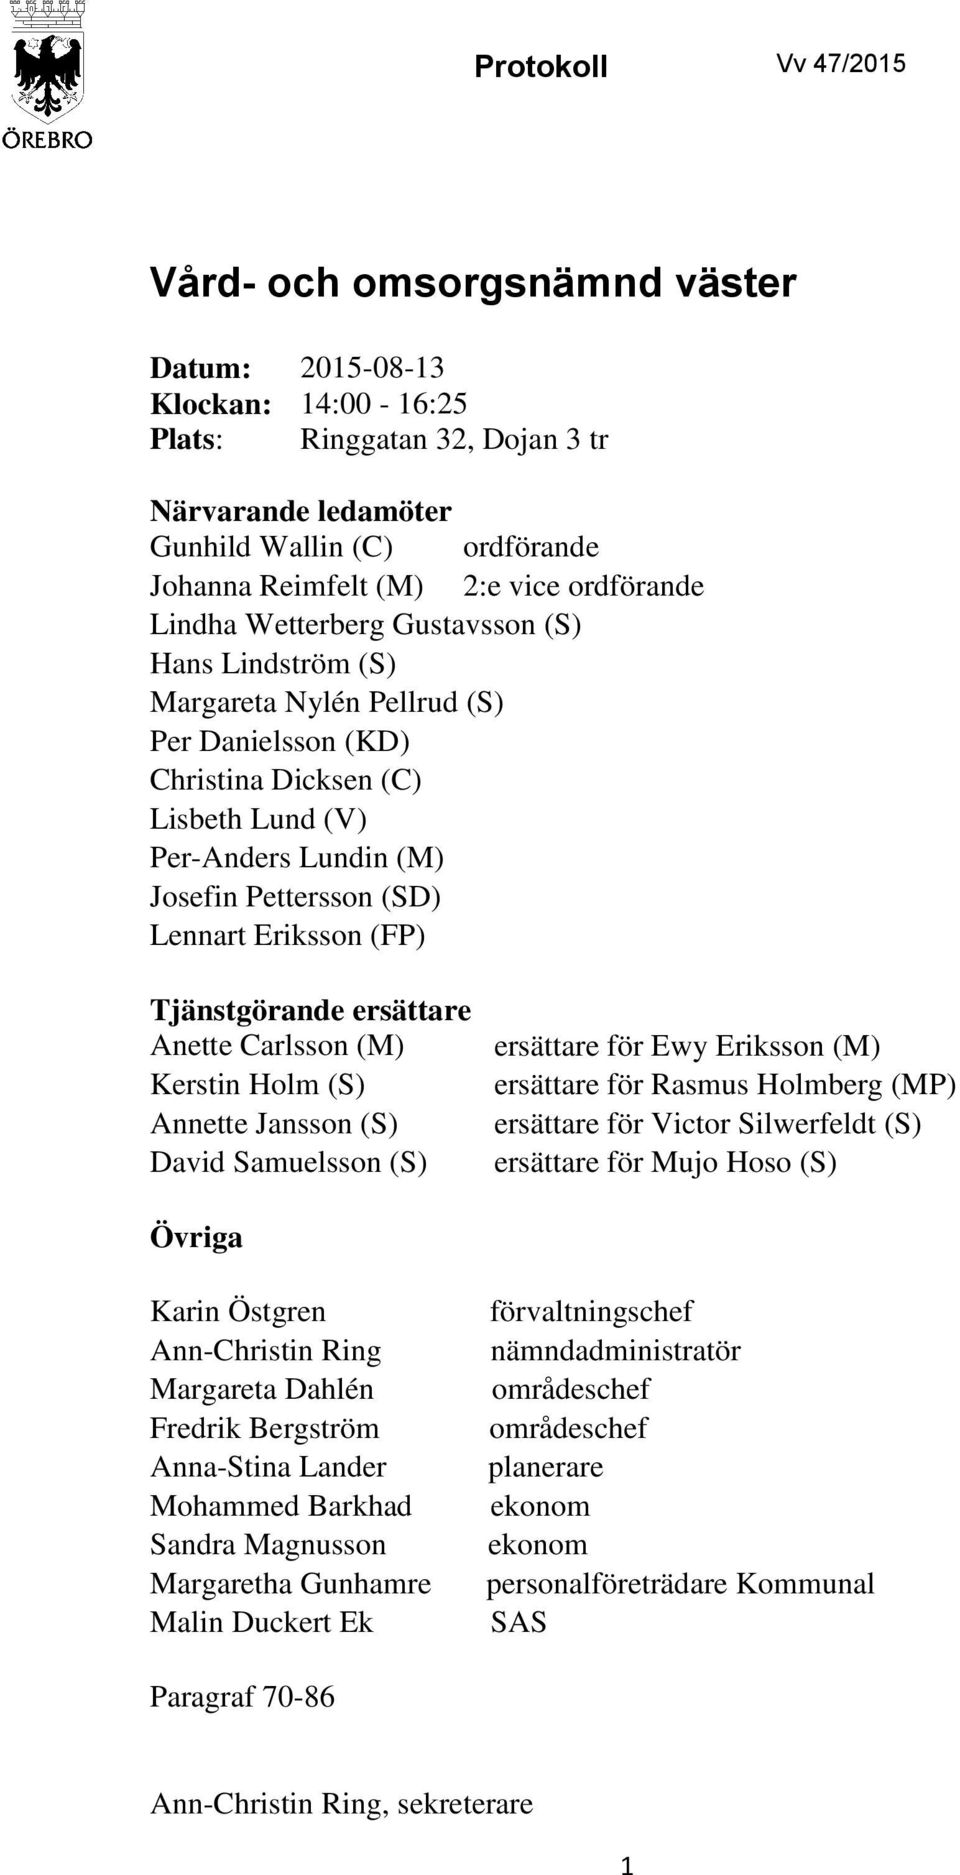 (SD) Lennart Eriksson (FP) Tjänstgörande ersättare Anette Carlsson (M) Kerstin Holm (S) Annette Jansson (S) David Samuelsson (S) ersättare för Ewy Eriksson (M) ersättare för Rasmus Holmberg (MP)